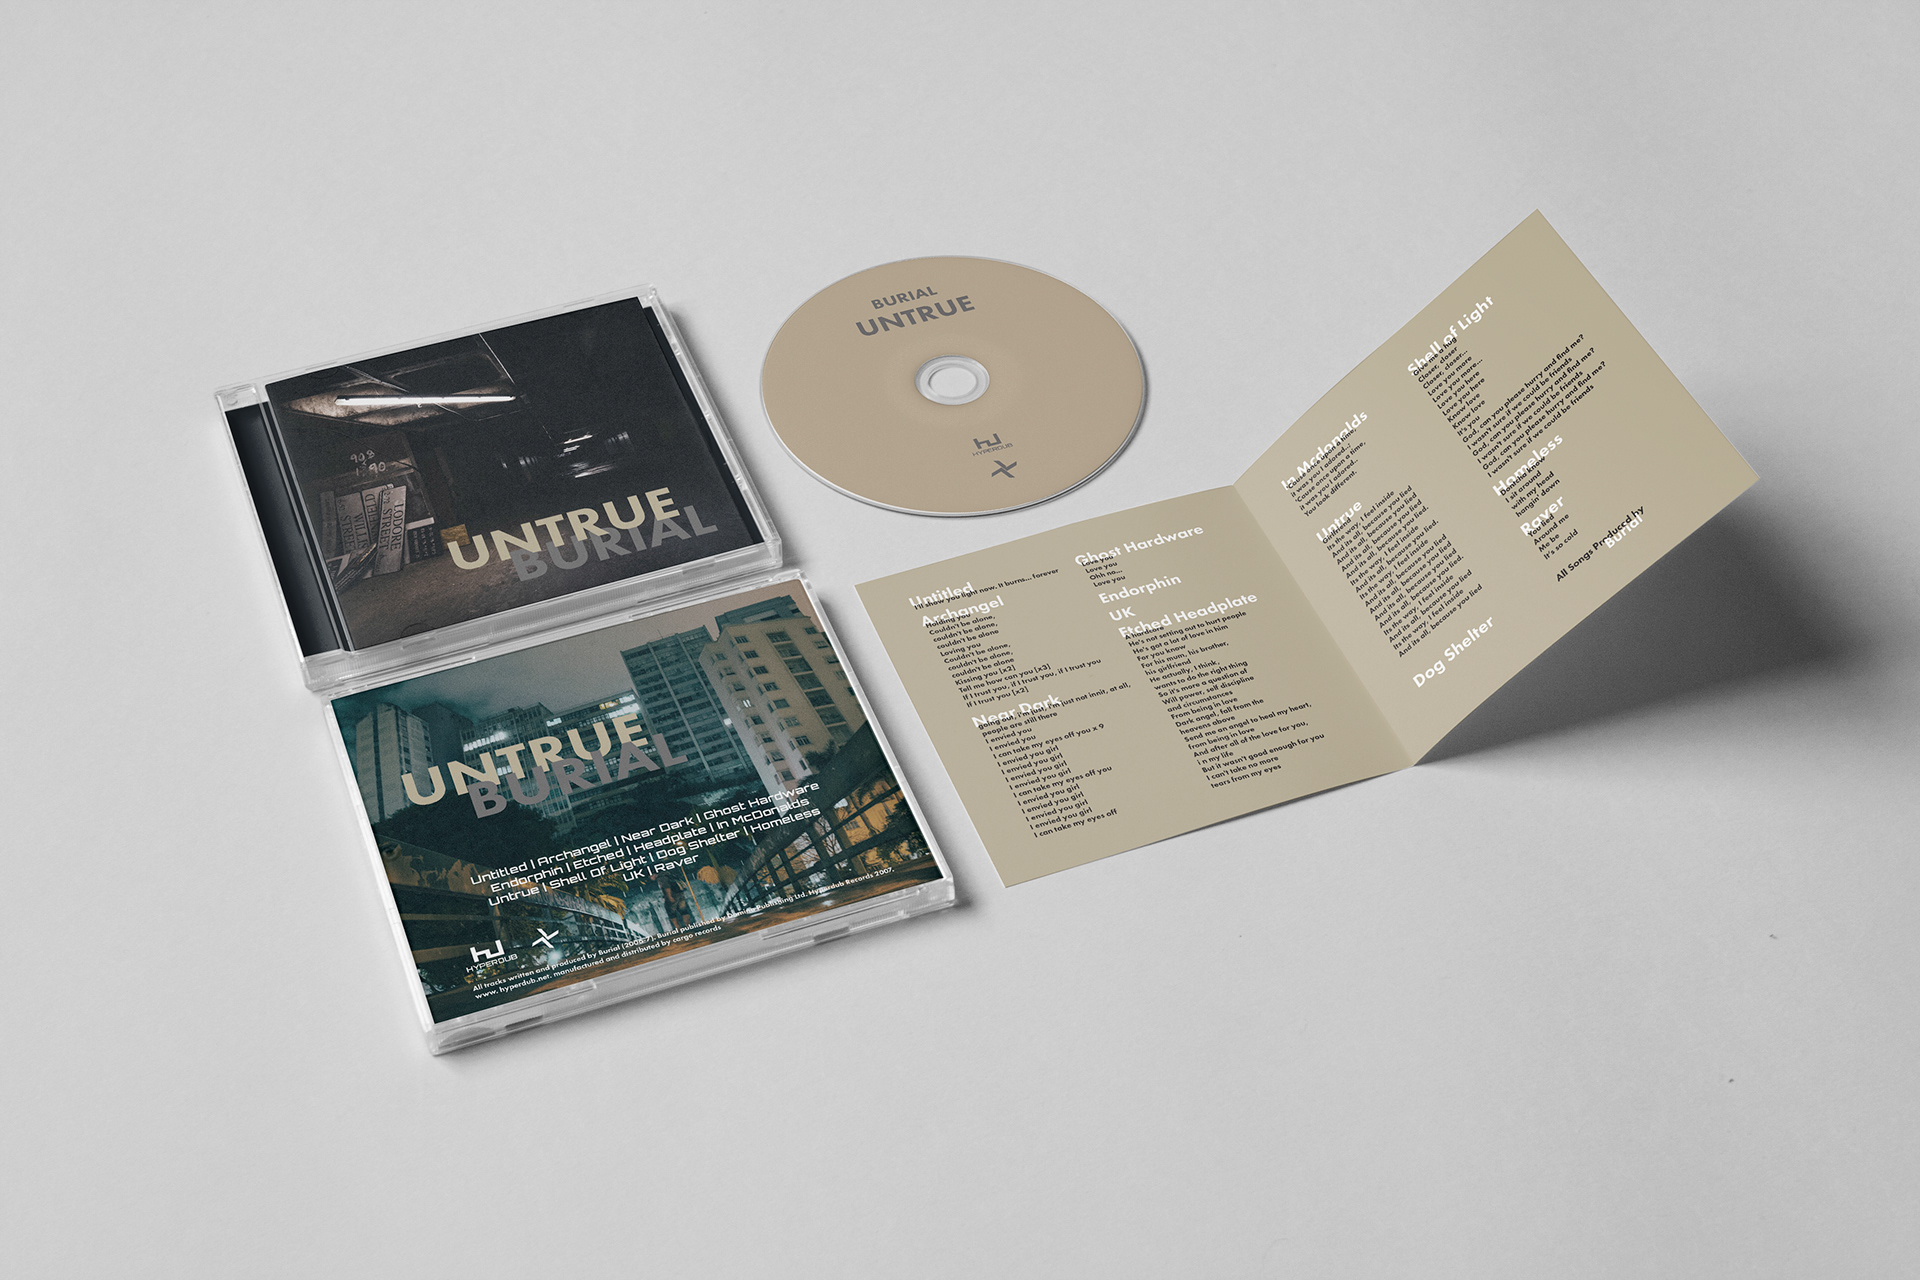 Johnny Vanderhorst - Burial Untrue CD Booklet